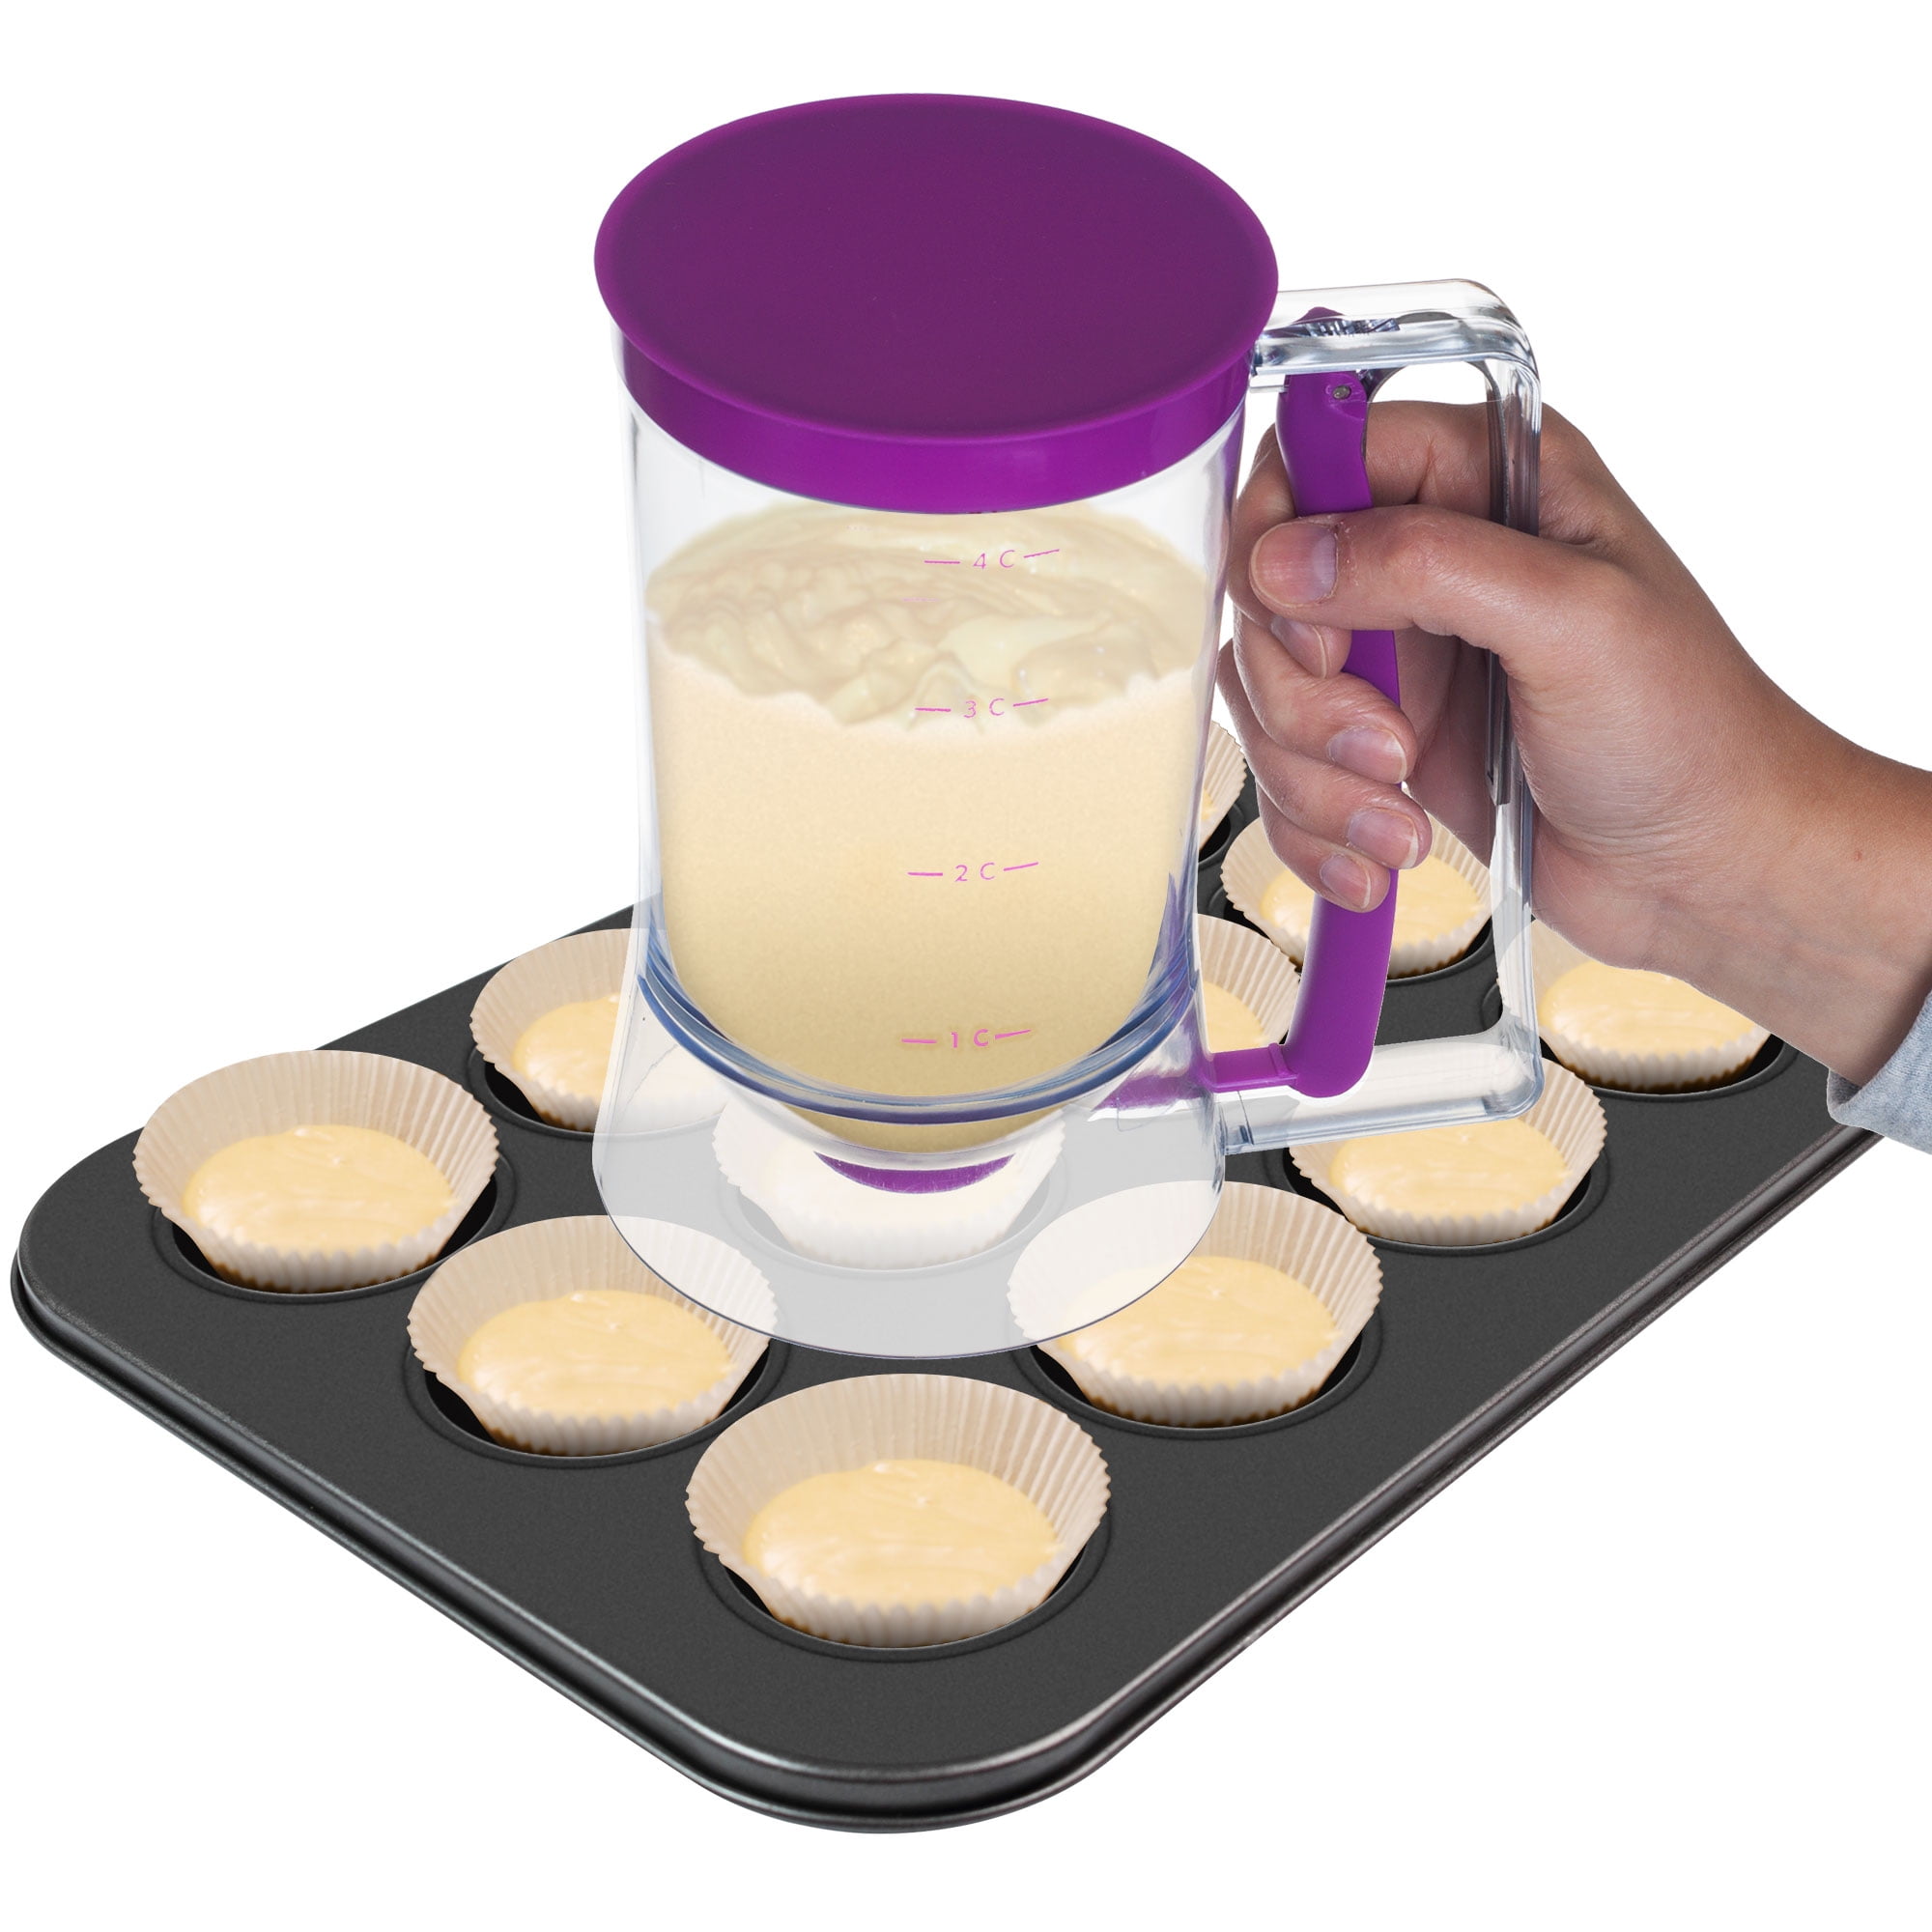 Pancake Batter Dispenser Cake Batter Dispenser And Funnel Shaker For  Seasonings Graduated Measuring Cup Measuring Bottles With Ball Mixer For  Preparin